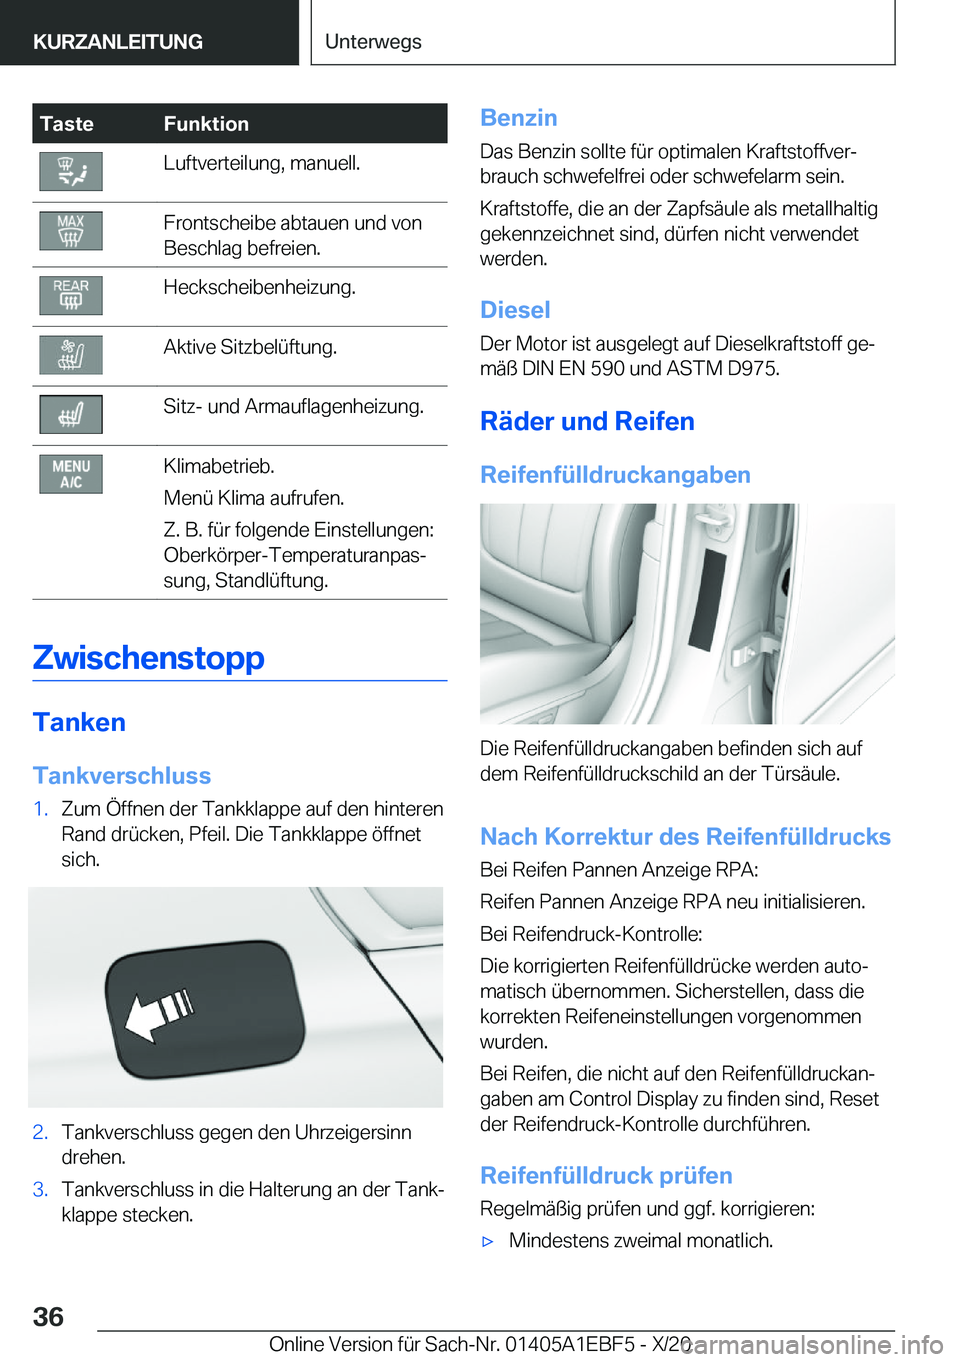 BMW 8 SERIES GRAN COUPE 2021  Betriebsanleitungen (in German) �T�a�s�t�e�F�u�n�k�t�i�o�n�L�u�f�t�v�e�r�t�e�i�l�u�n�g�,��m�a�n�u�e�l�l�.�F�r�o�n�t�s�c�h�e�i�b�e��a�b�t�a�u�e�n��u�n�d��v�o�n
�B�e�s�c�h�l�a�g��b�e�f�r�e�i�e�n�.�H�e�c�k�s�c�h�e�i�b�e�n�h�e�i�z�